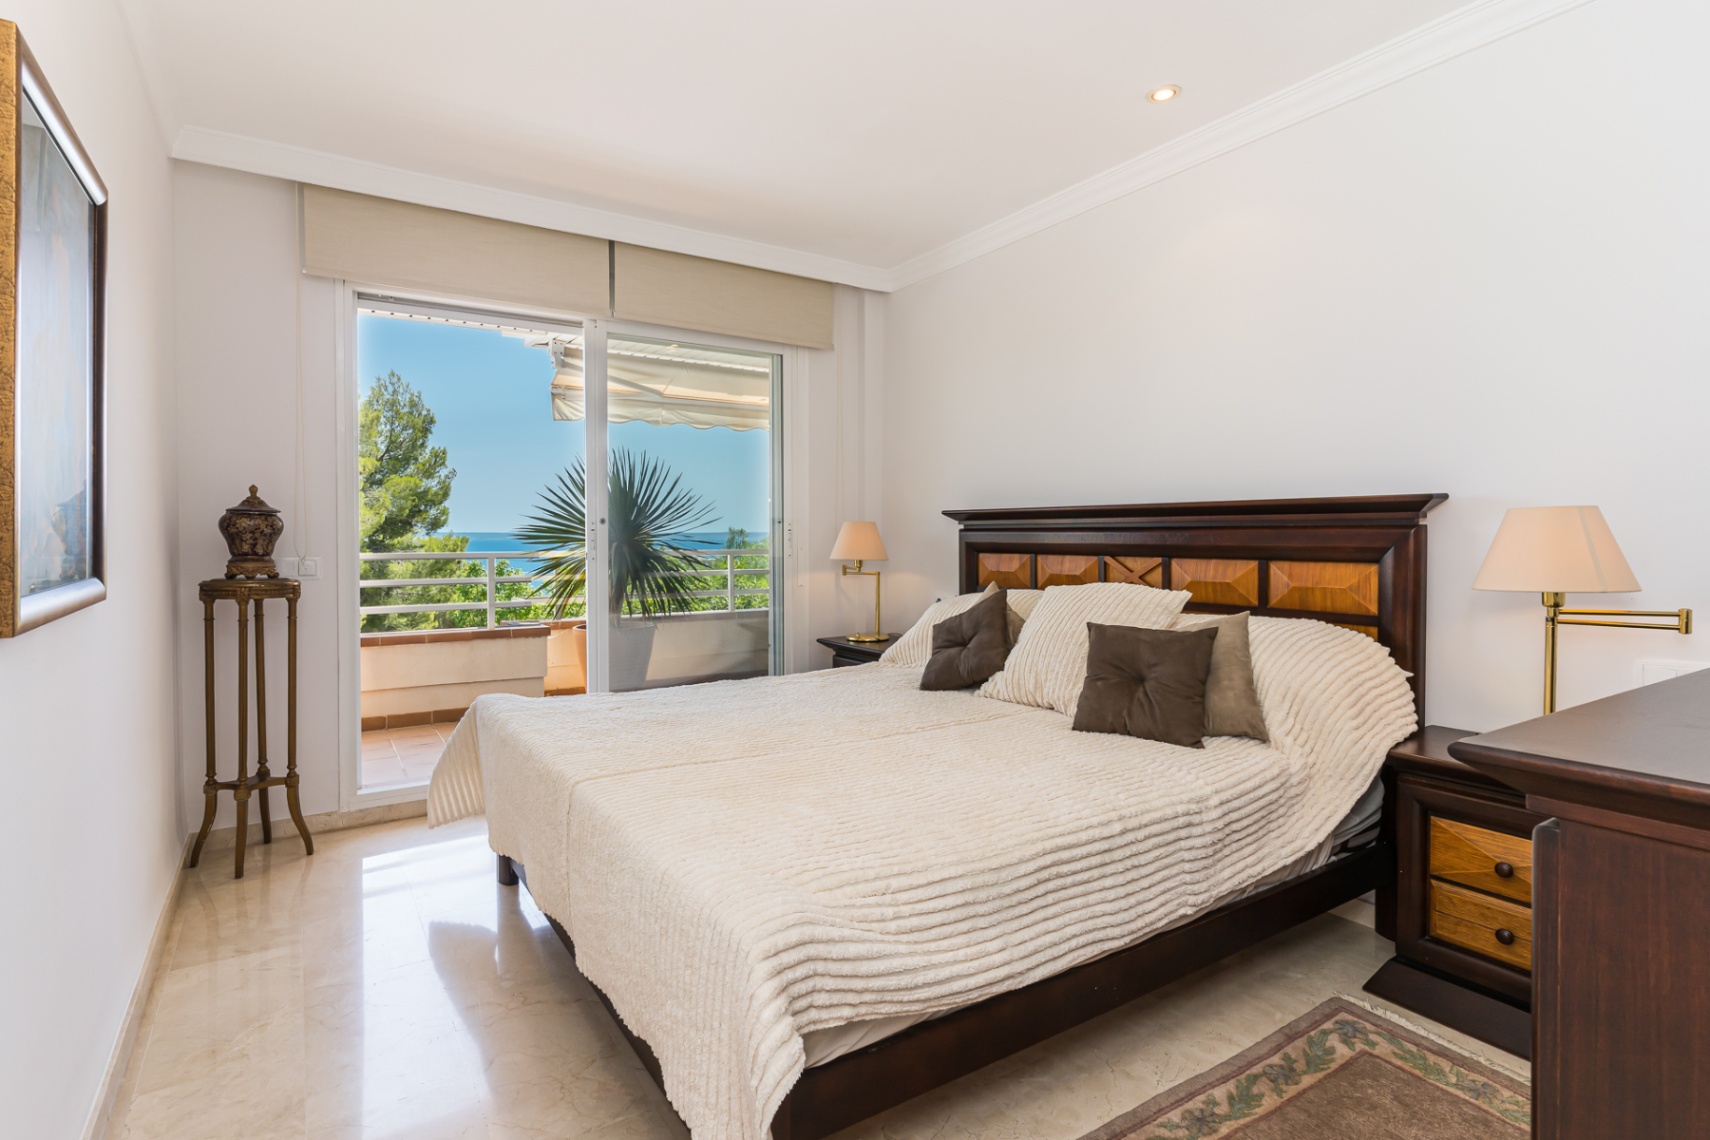 Schöne Wohnung mit Meerblick in ruhiger Gegend von Cas Catala